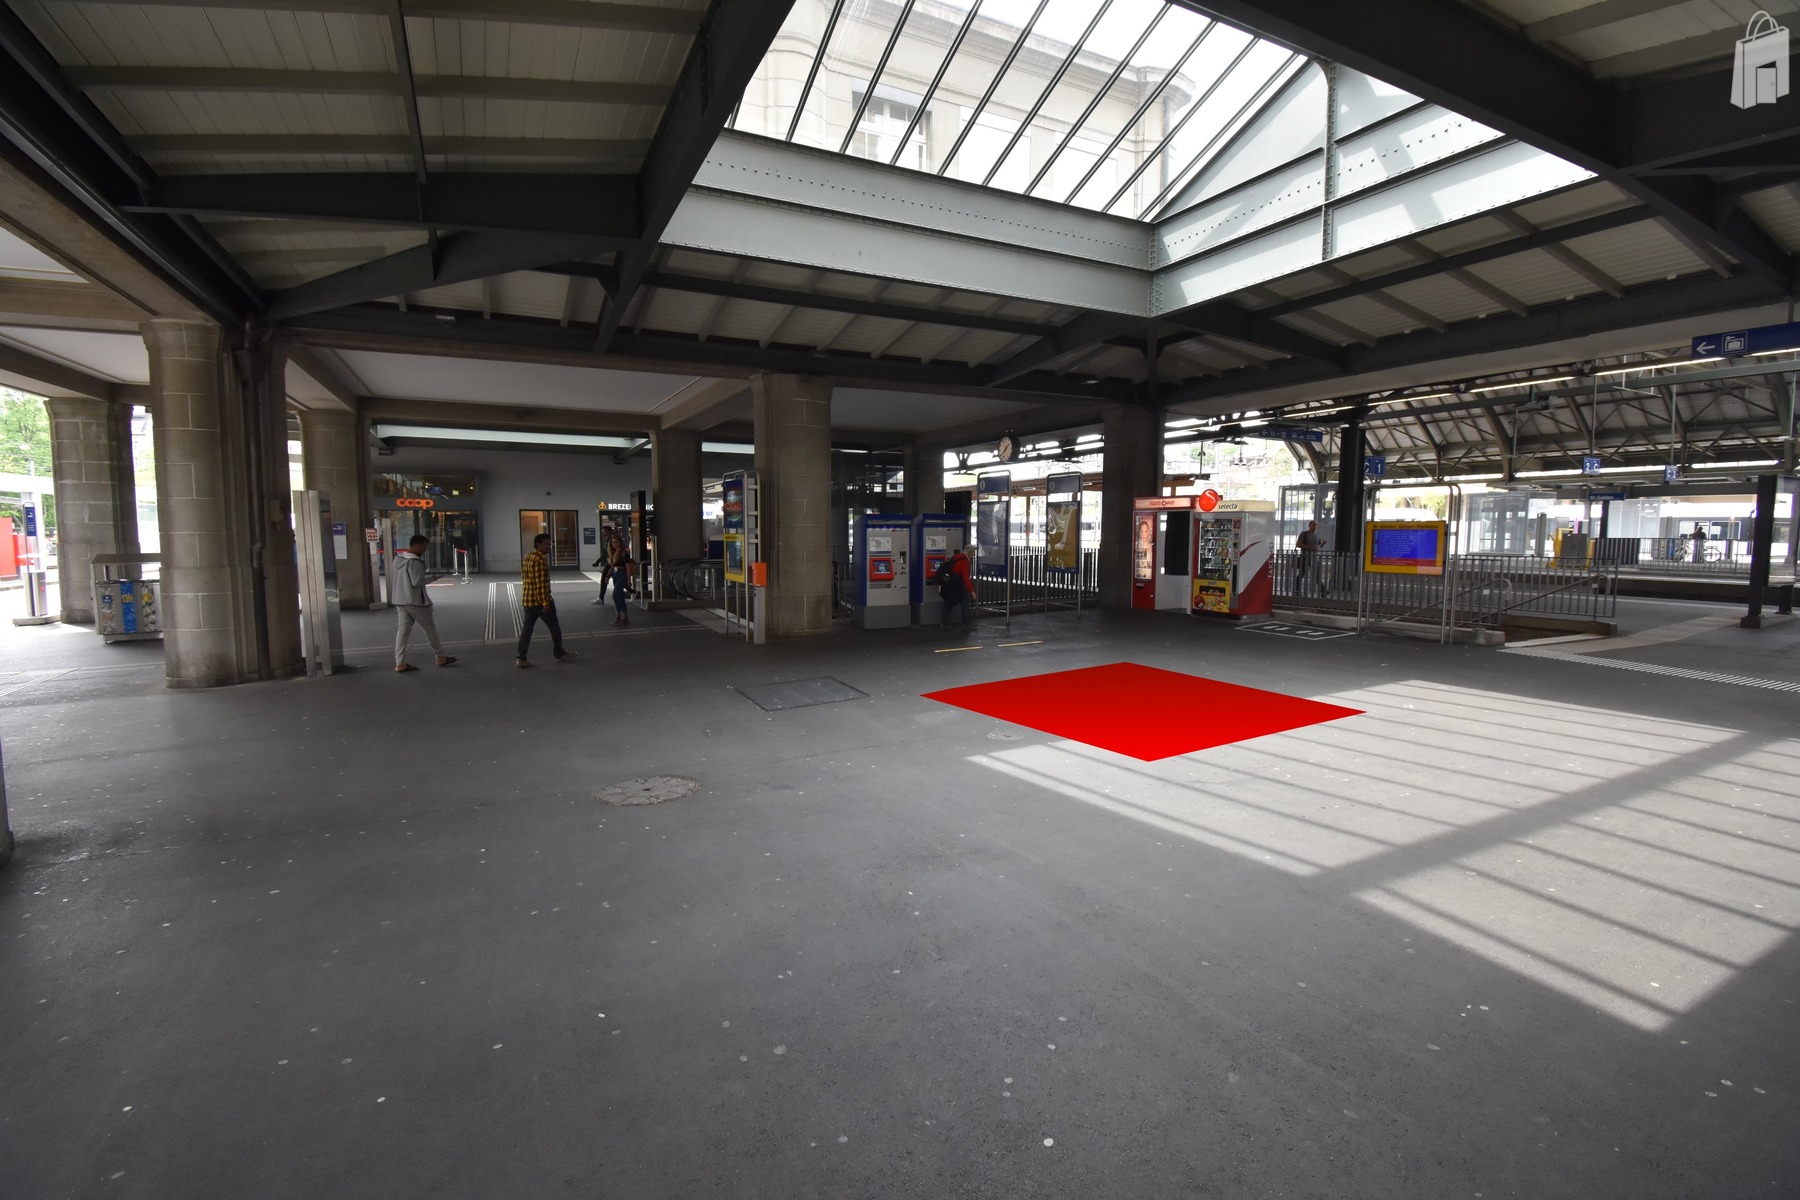 Promotionsfläche P1, Bahnhof St. Gallen SBB - Länge x Breite : 3 m x 3 m